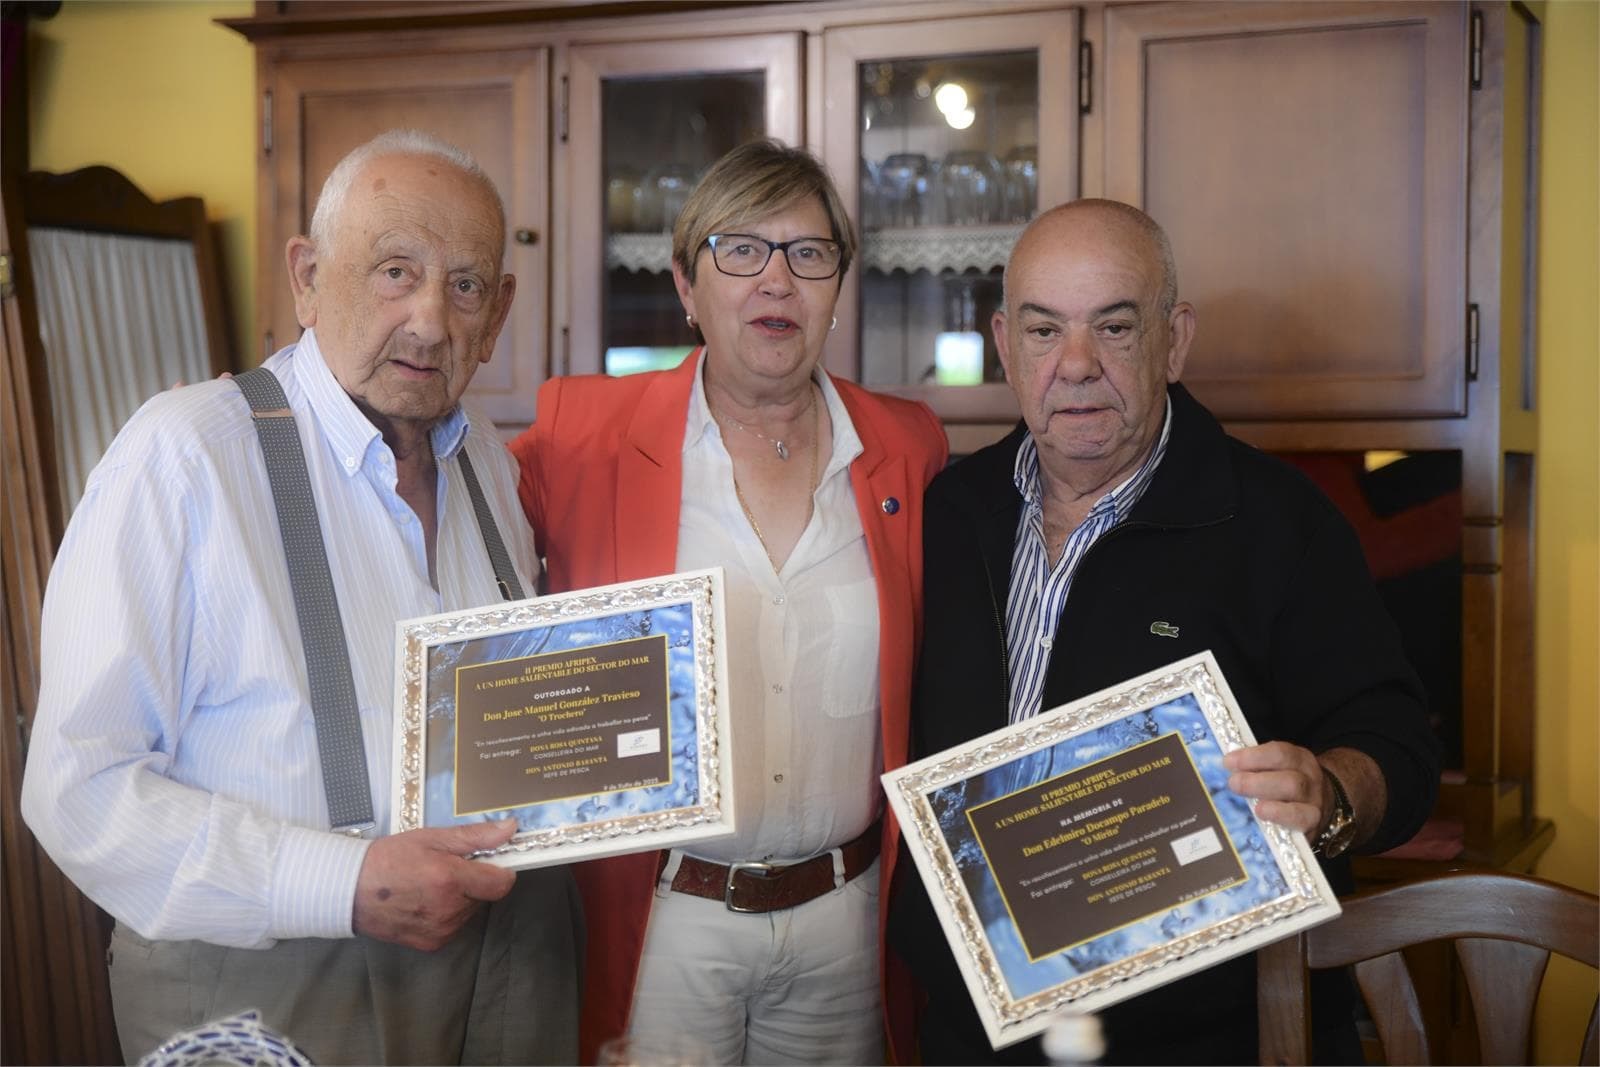 II Premio Afripex, home salientable do Sector do Mar Jose Manuel González, e en memoria de Edelmiro Docampo - Imagen 4